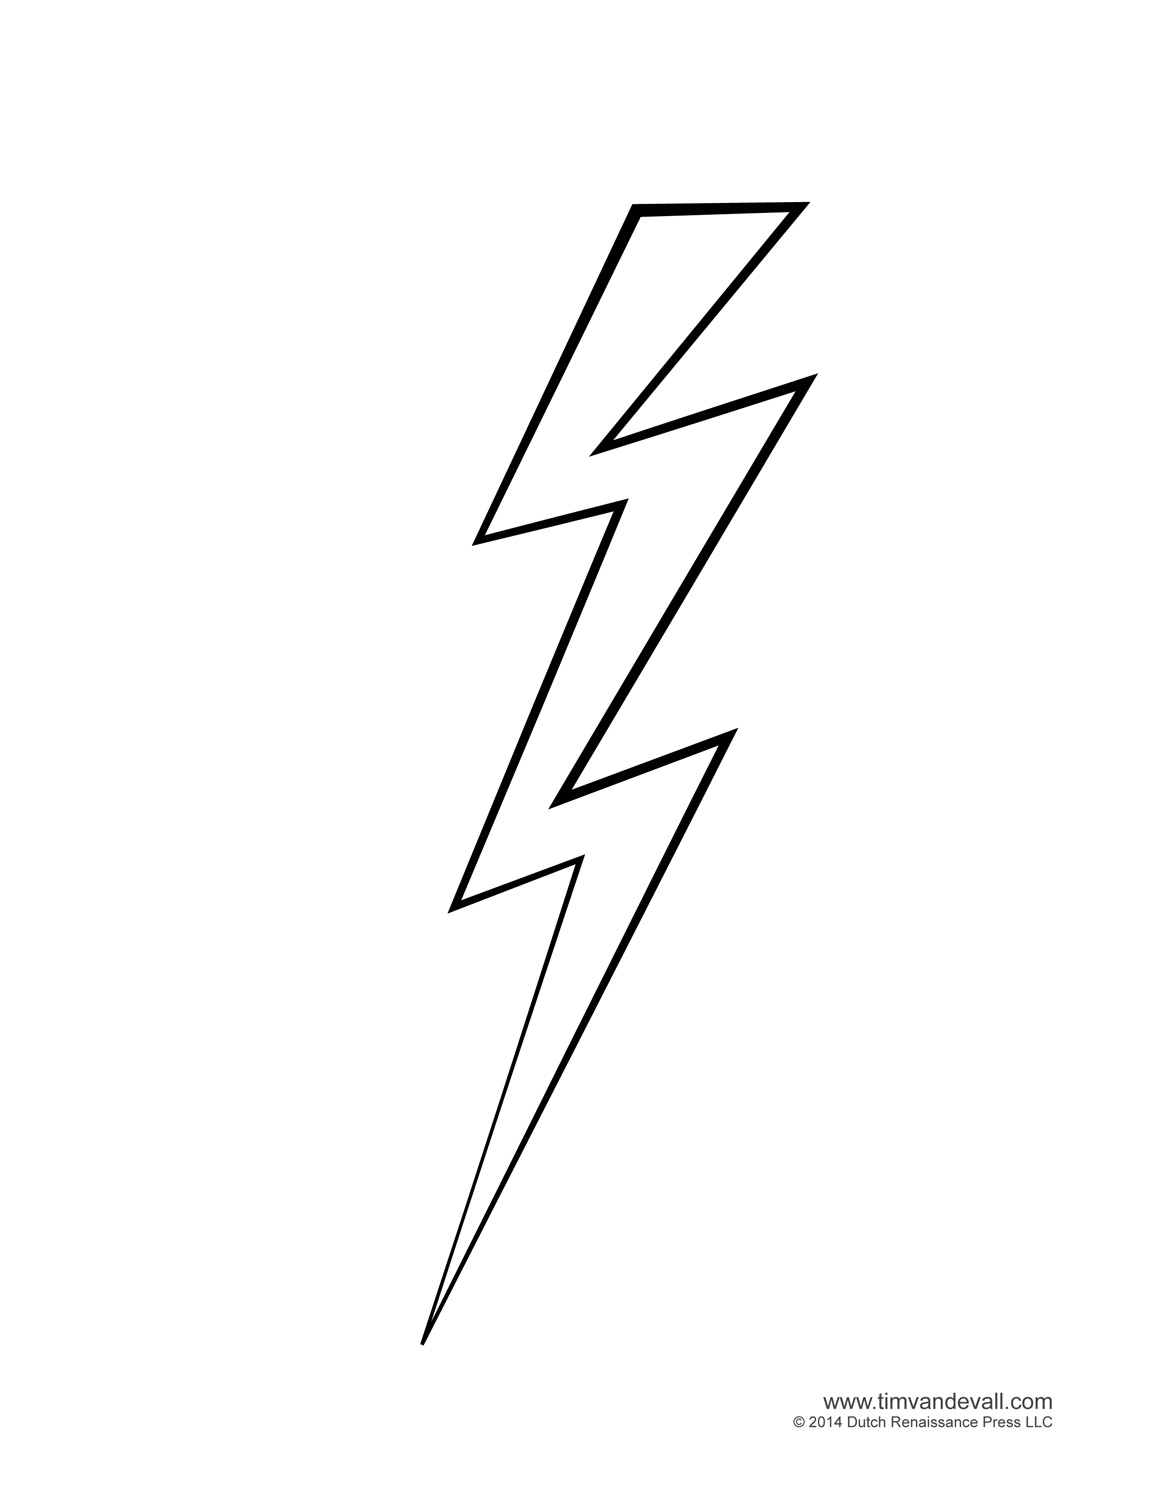 Lightning Clip Art